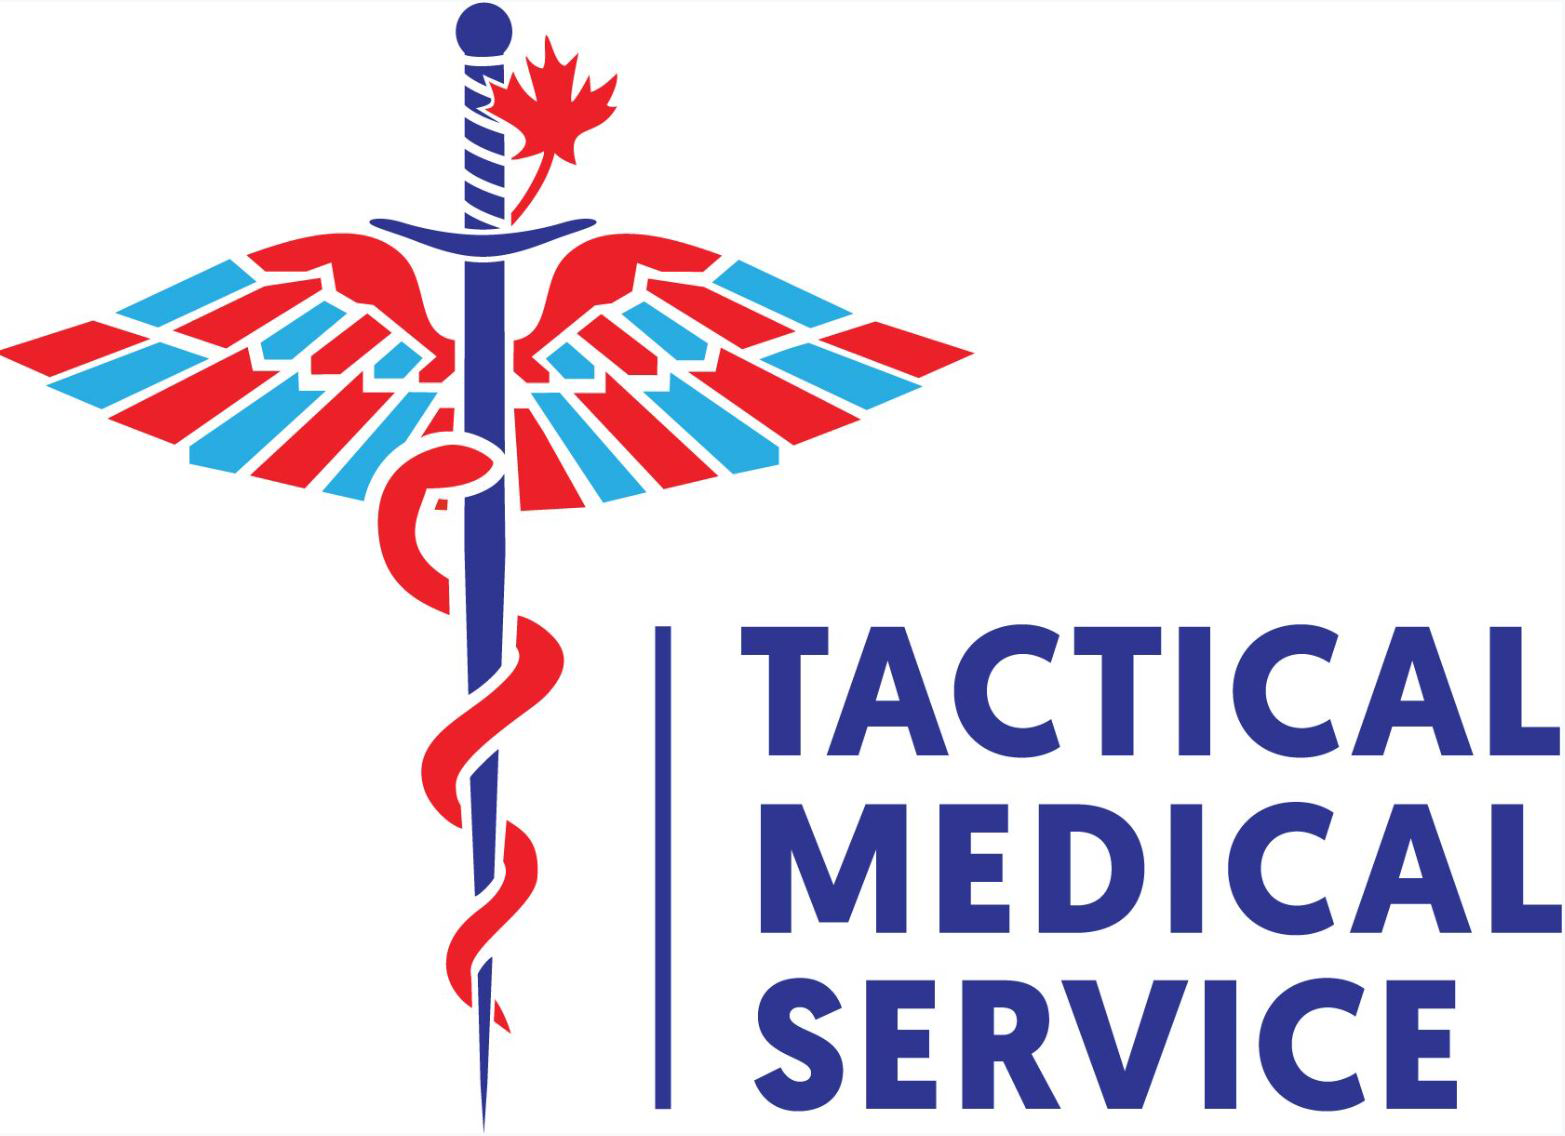 Tactical Medical Service